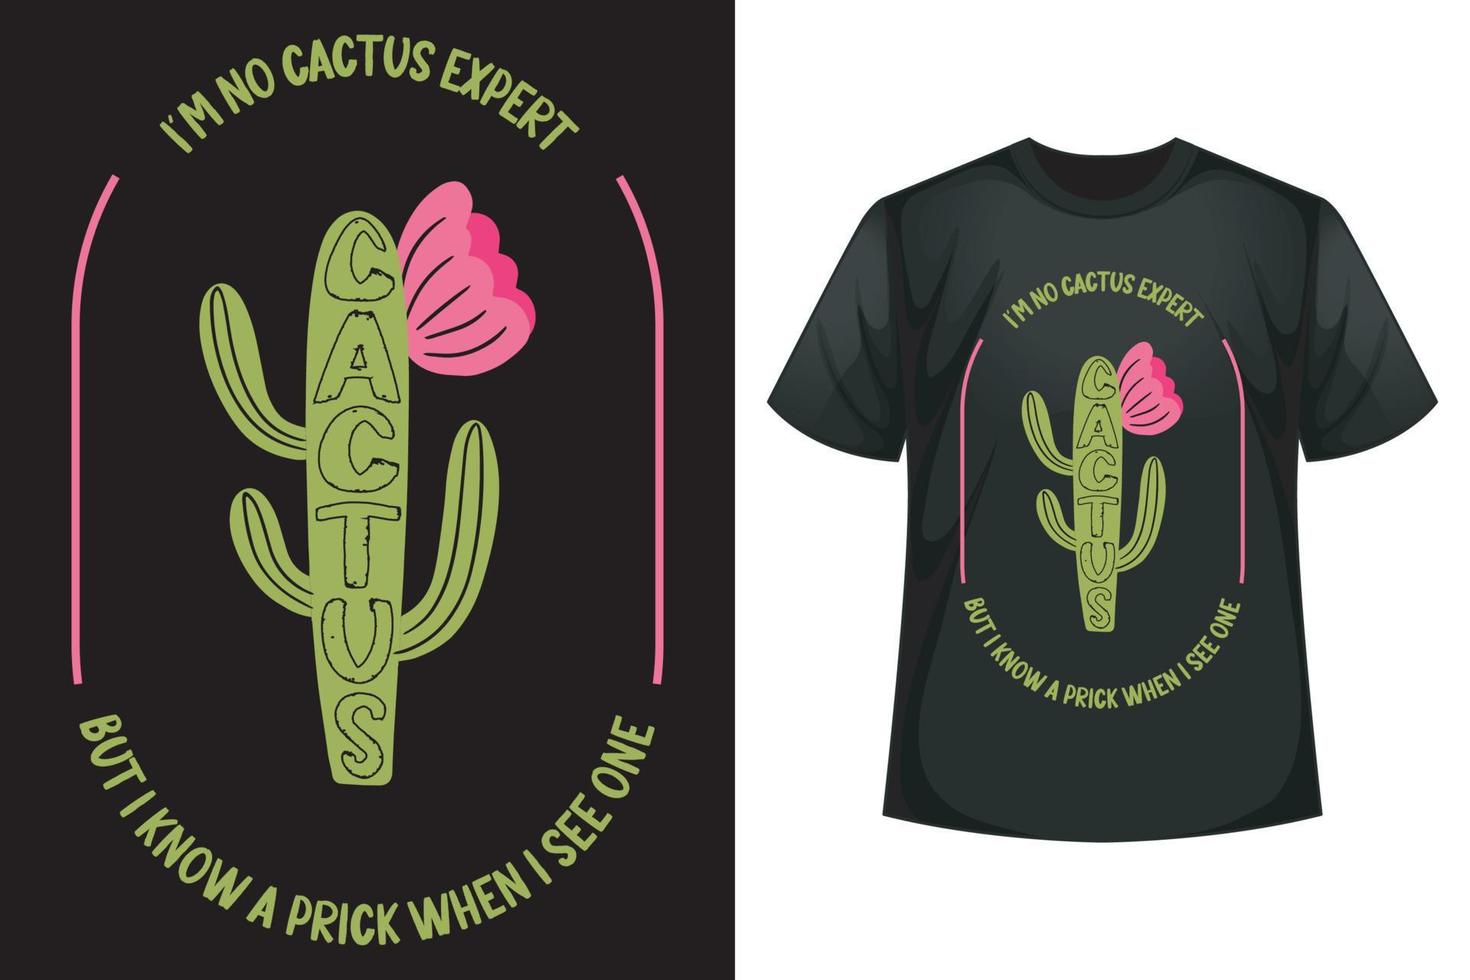 jag är Nej kaktus expert- men jag känna till en sticka när jag ser ett - kaktus t-shirt design mall vektor